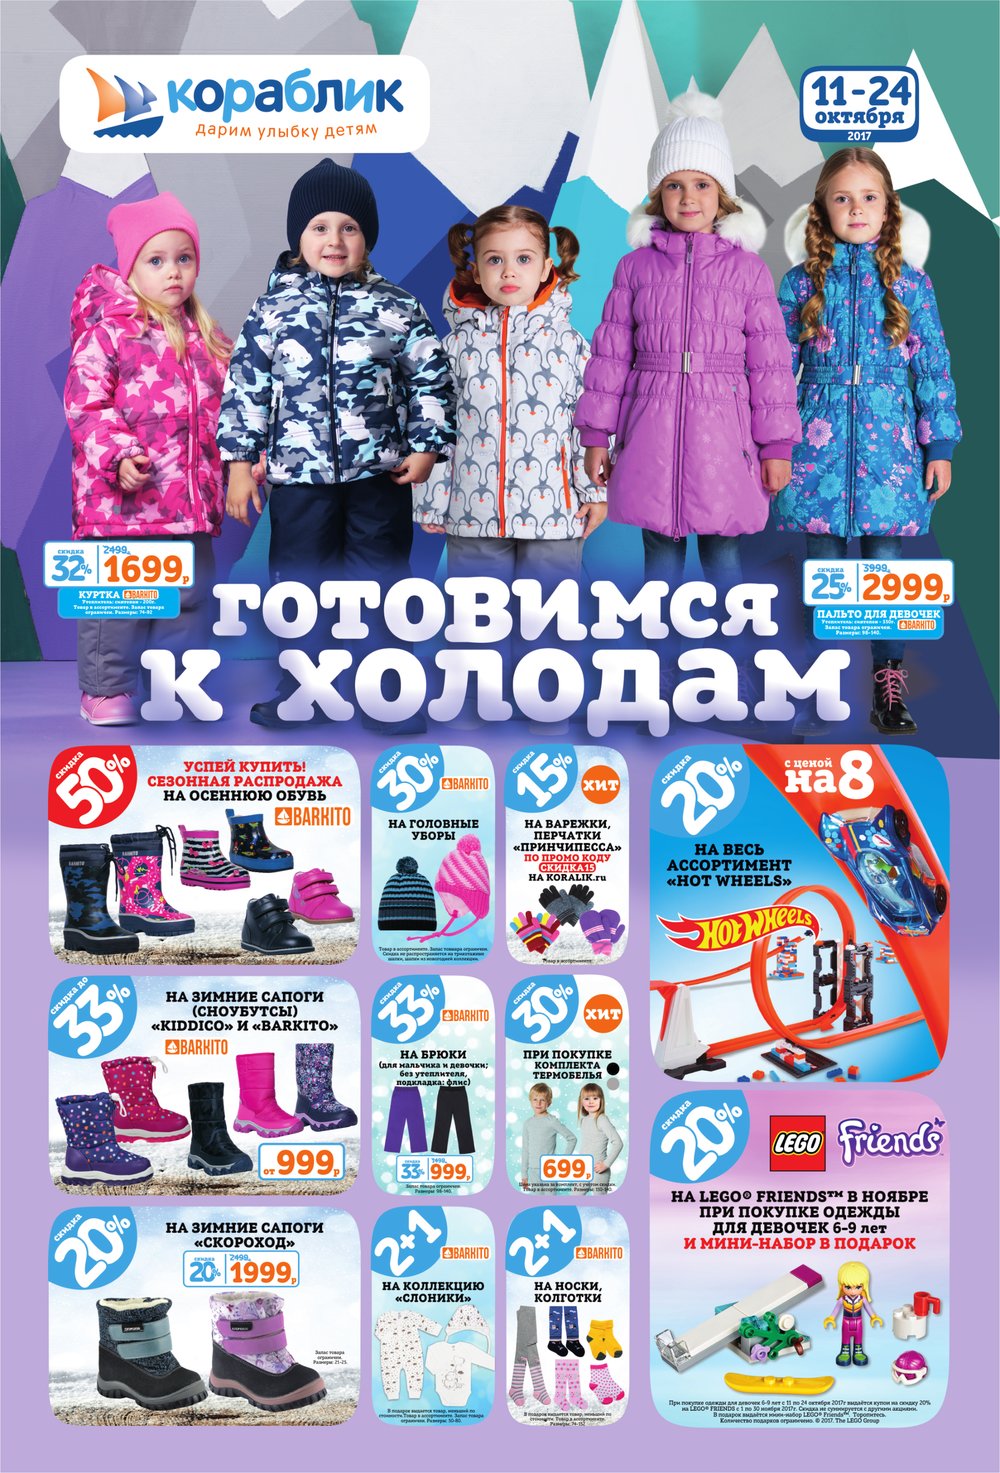 Детский Мир Интернет Магазин Наро Фоминск